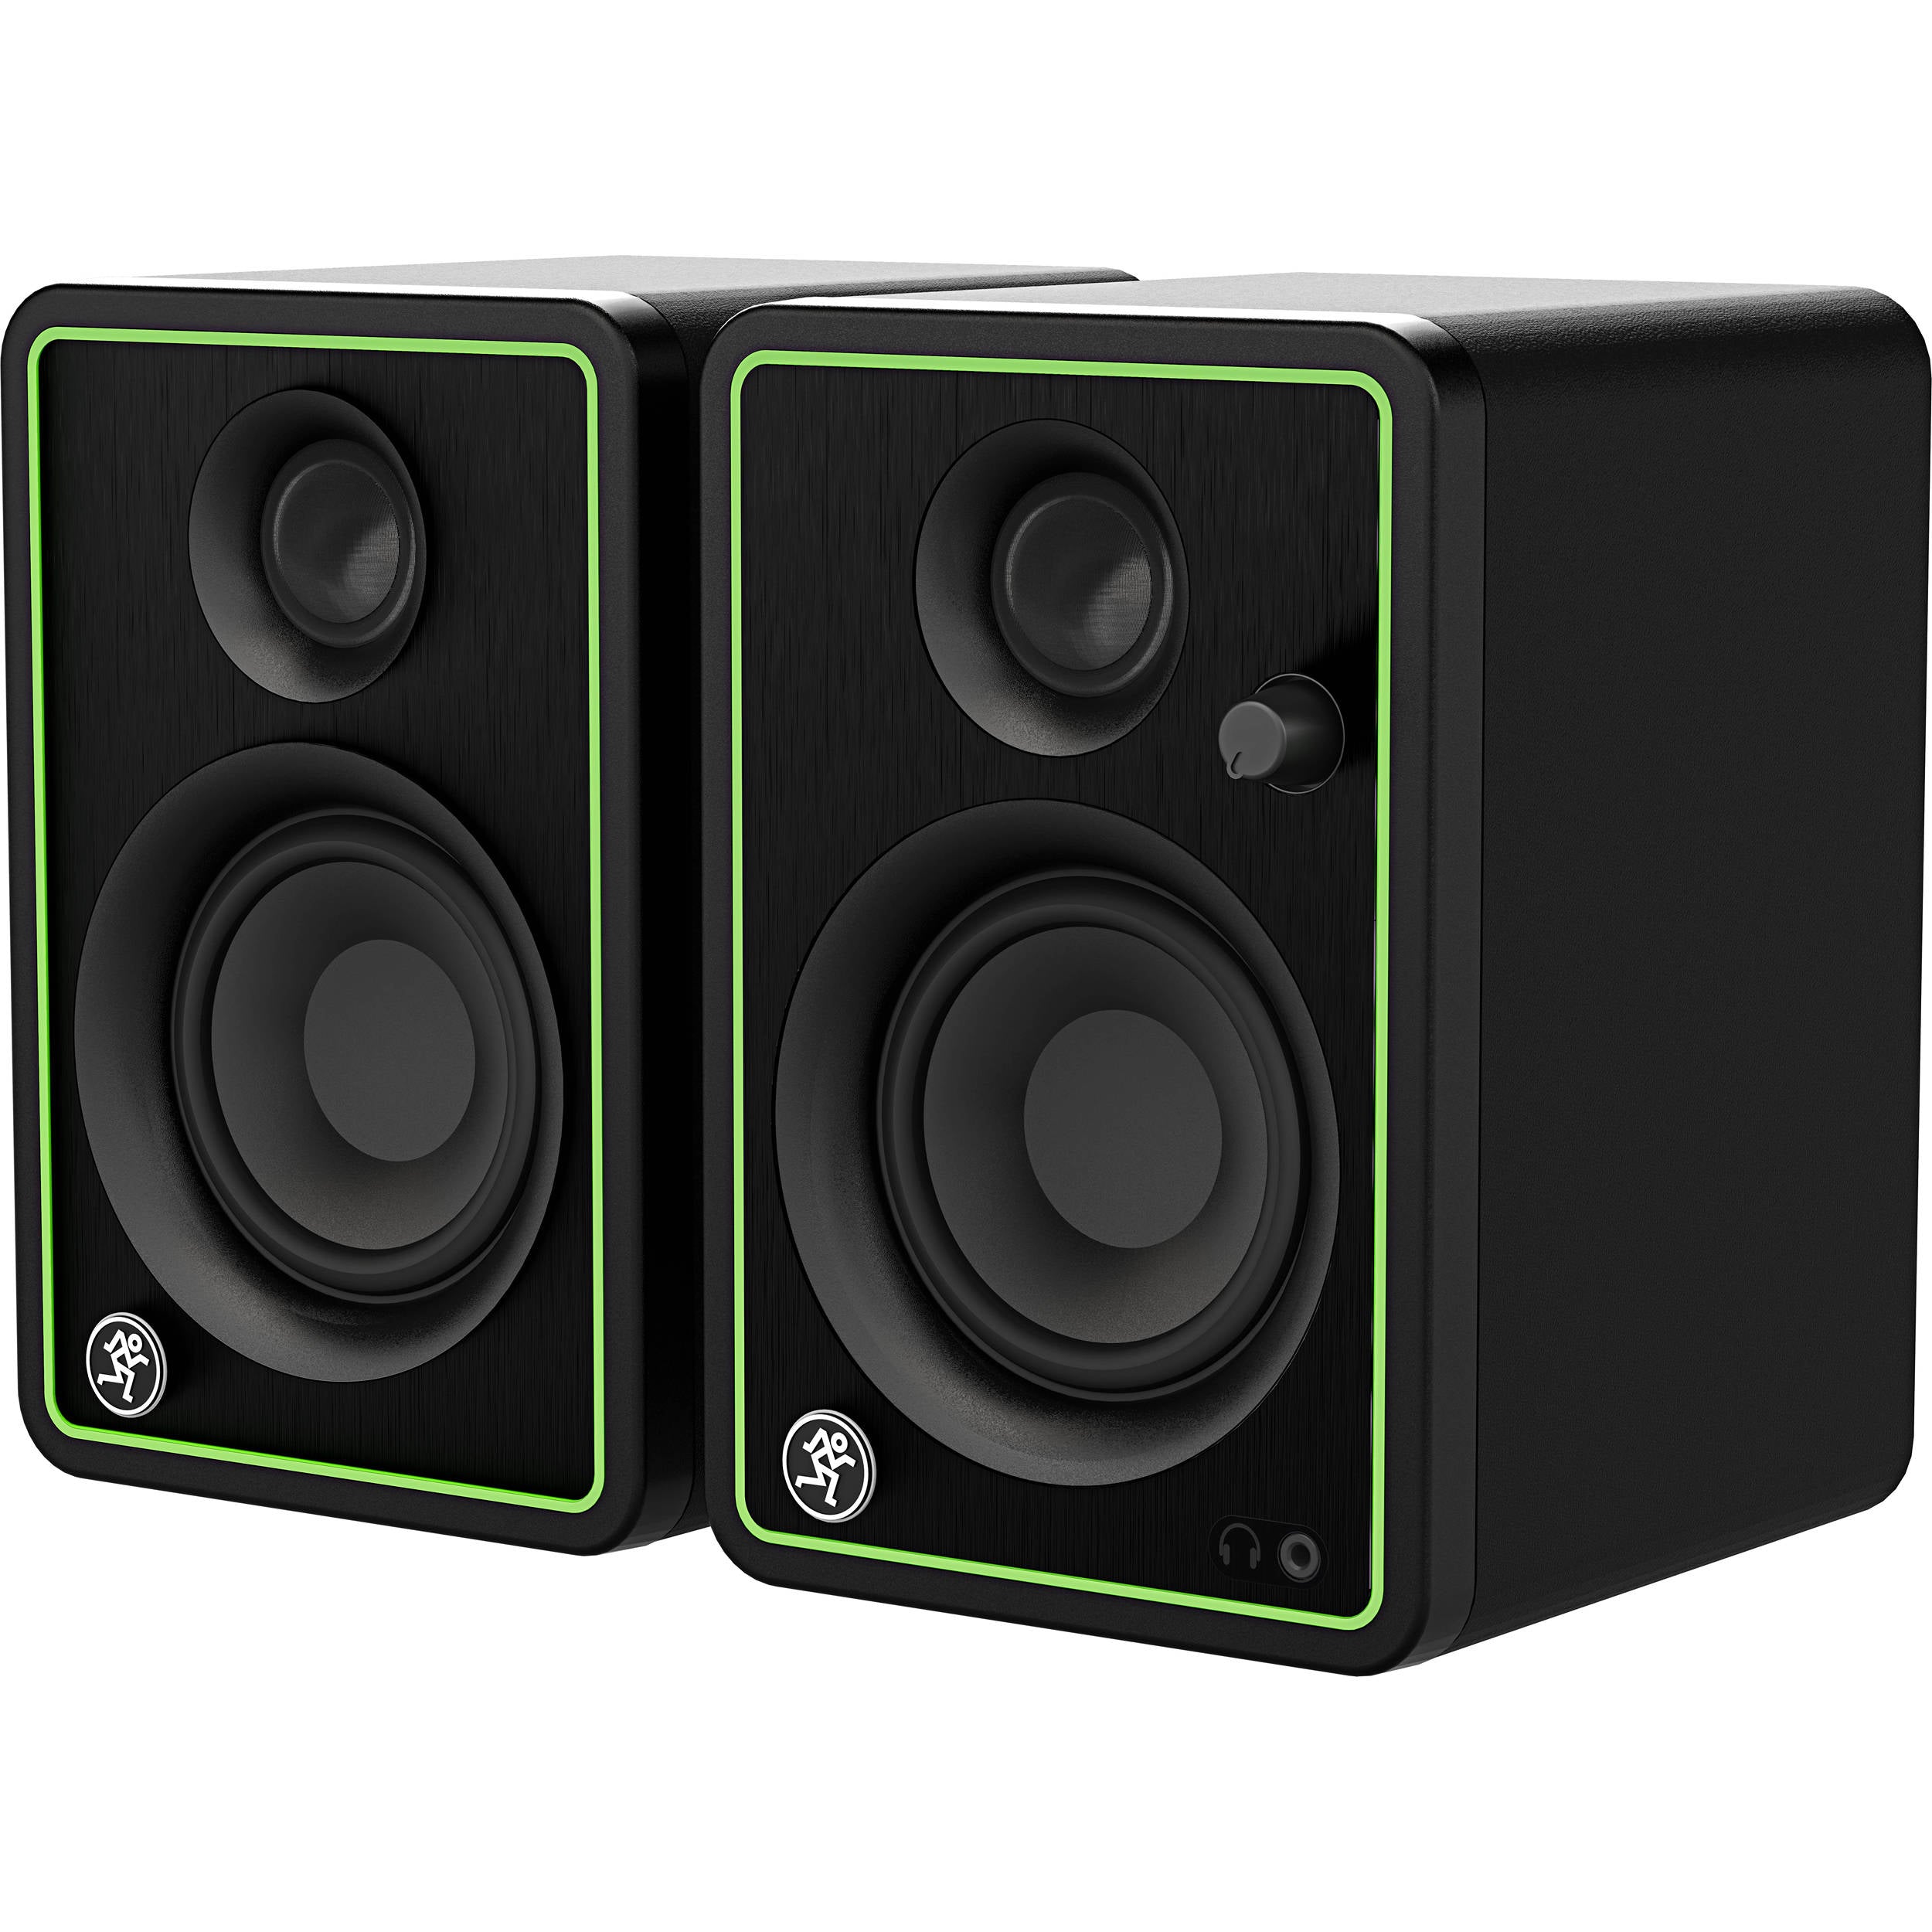 Mackie 2052116-00-RB CR3-X 3" Creative Powered Speakers (Pair) - Certified Refurbished